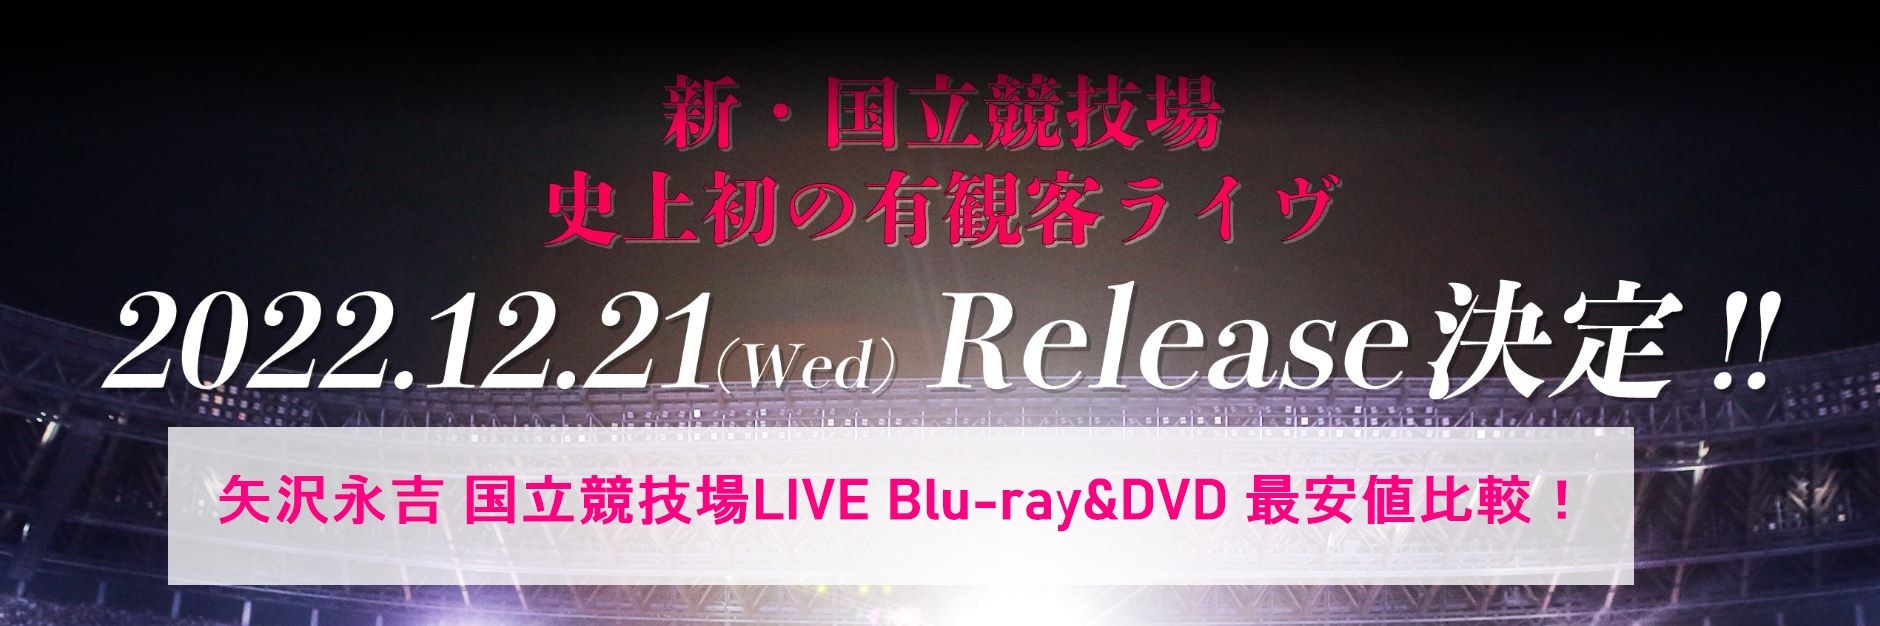 矢沢永吉国立競技場B'z DVD&Blu-ray最安値比較